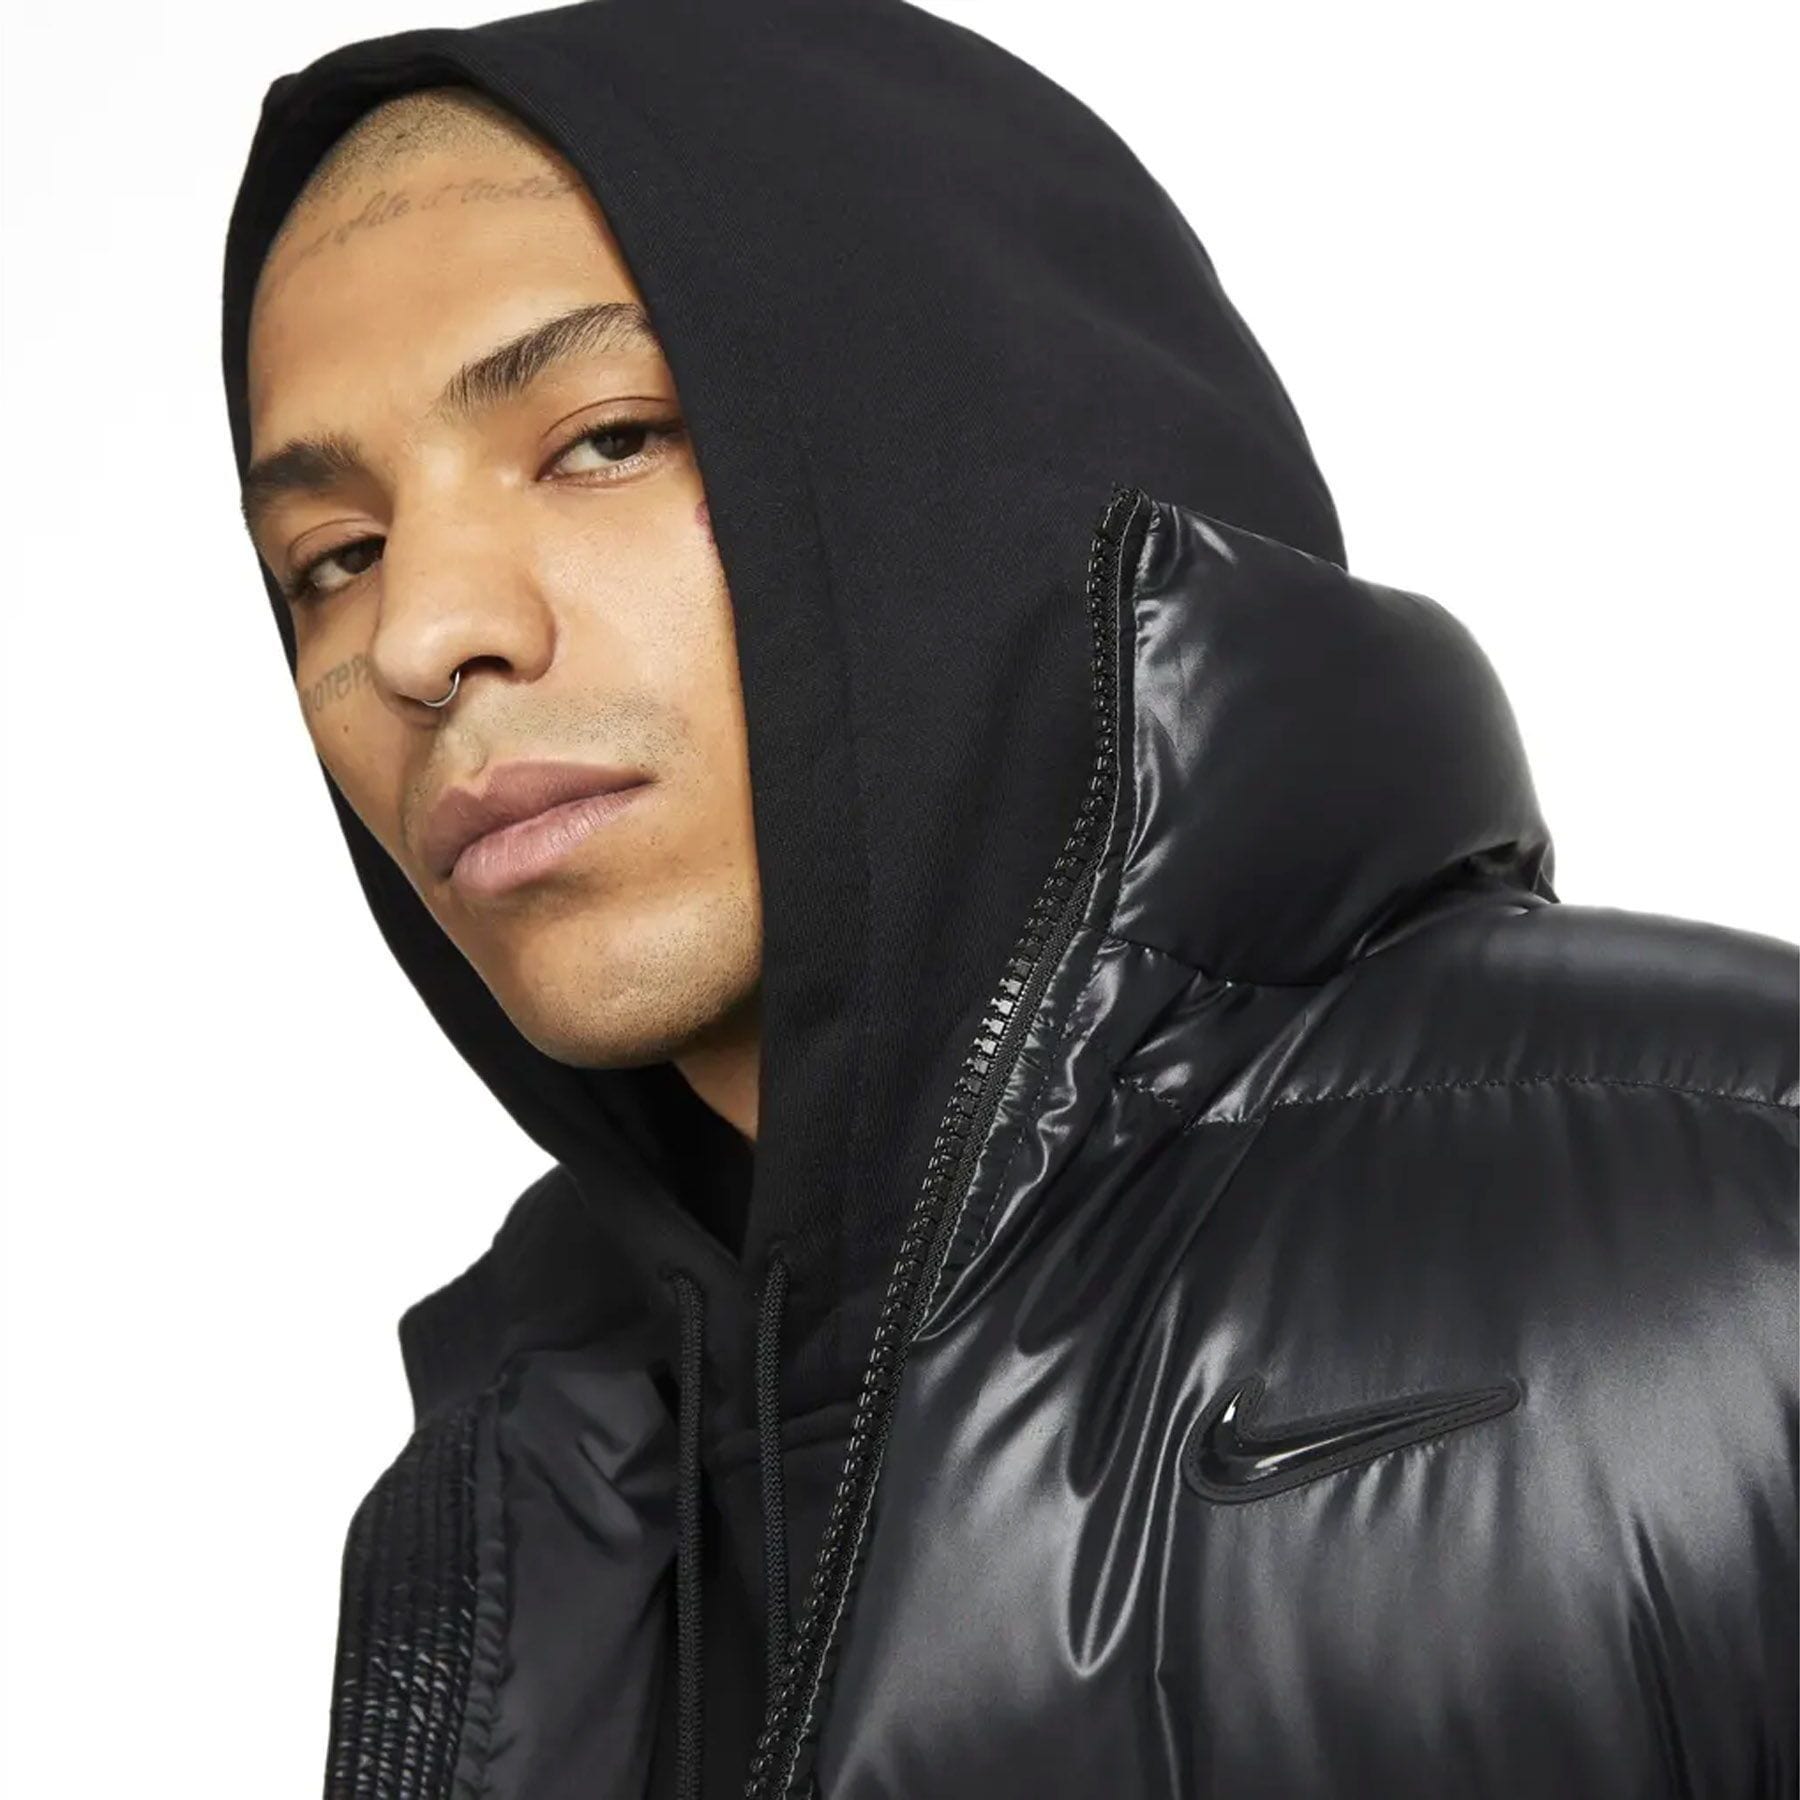 Nike x Drake NOCTA NRG Puffer Jacket 'Black' — Kick Game